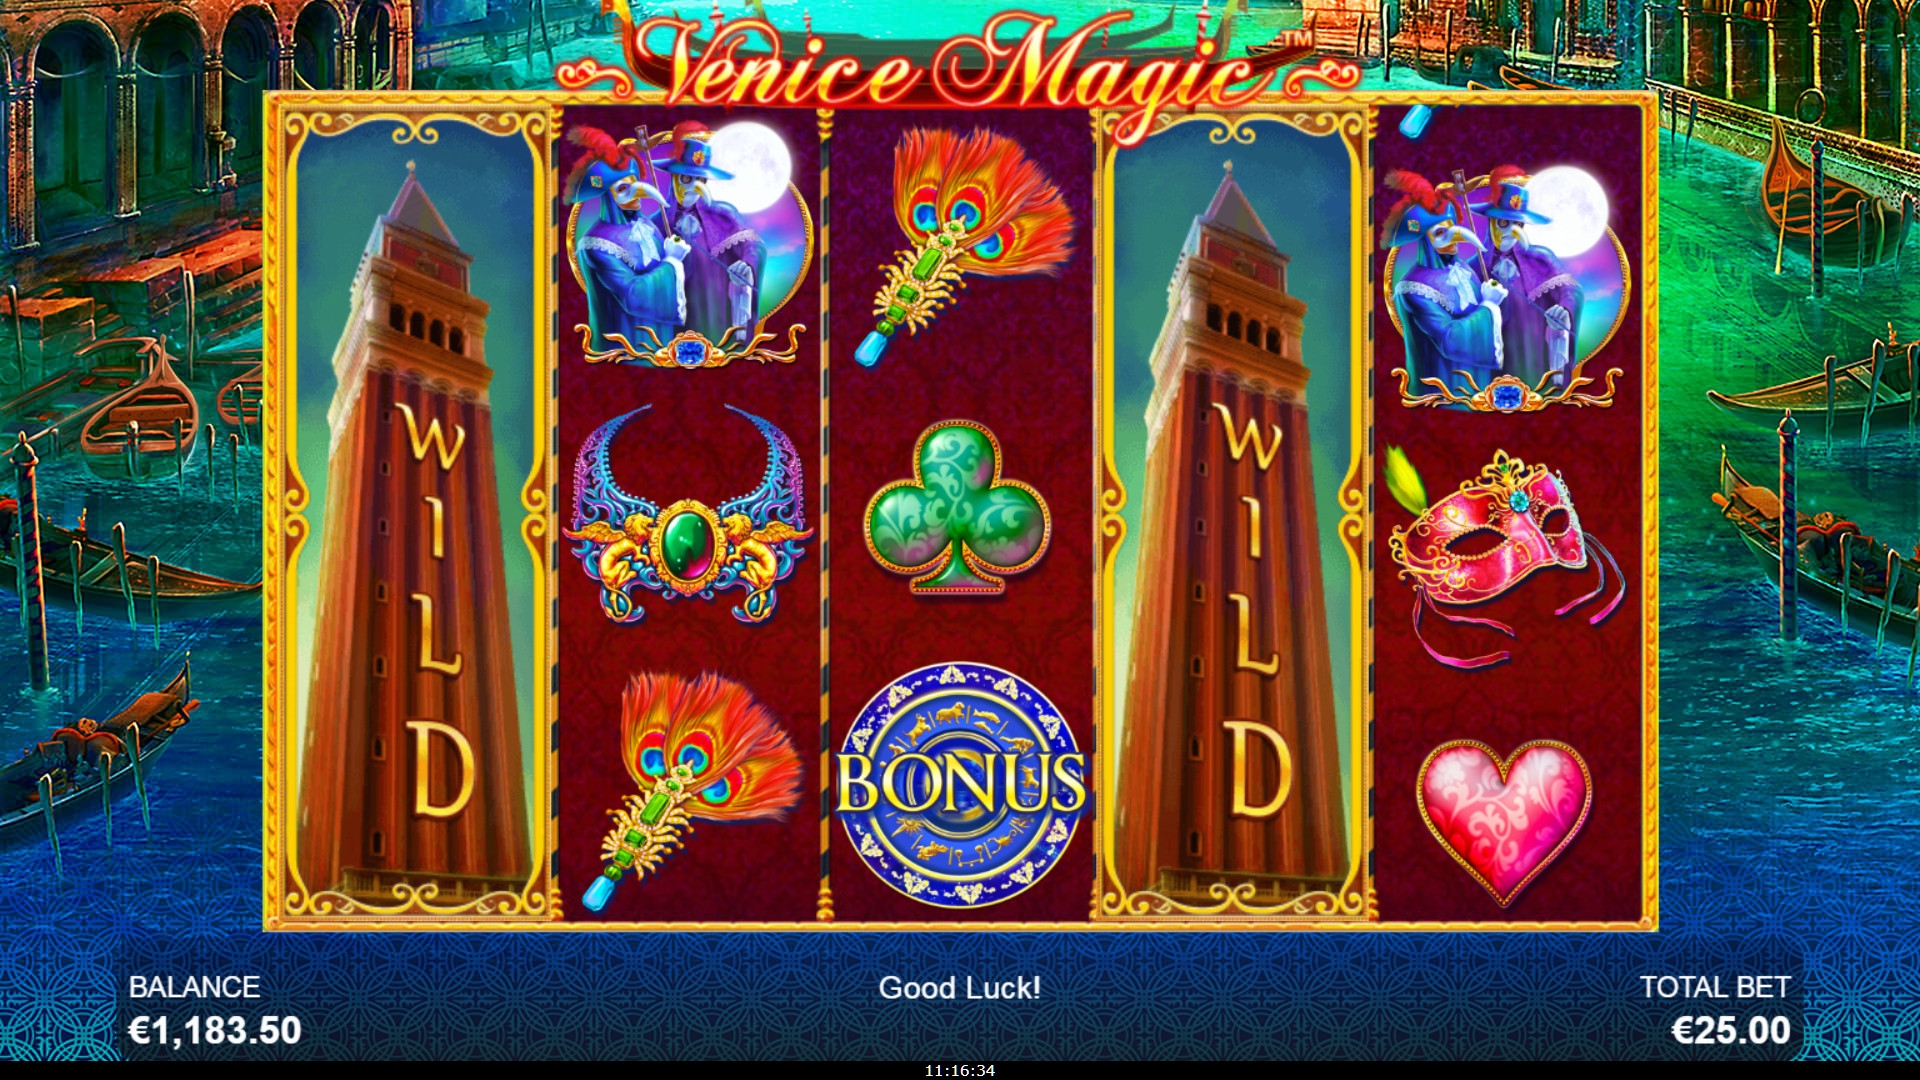 Venice Magic (Venice Magic) from category Slots